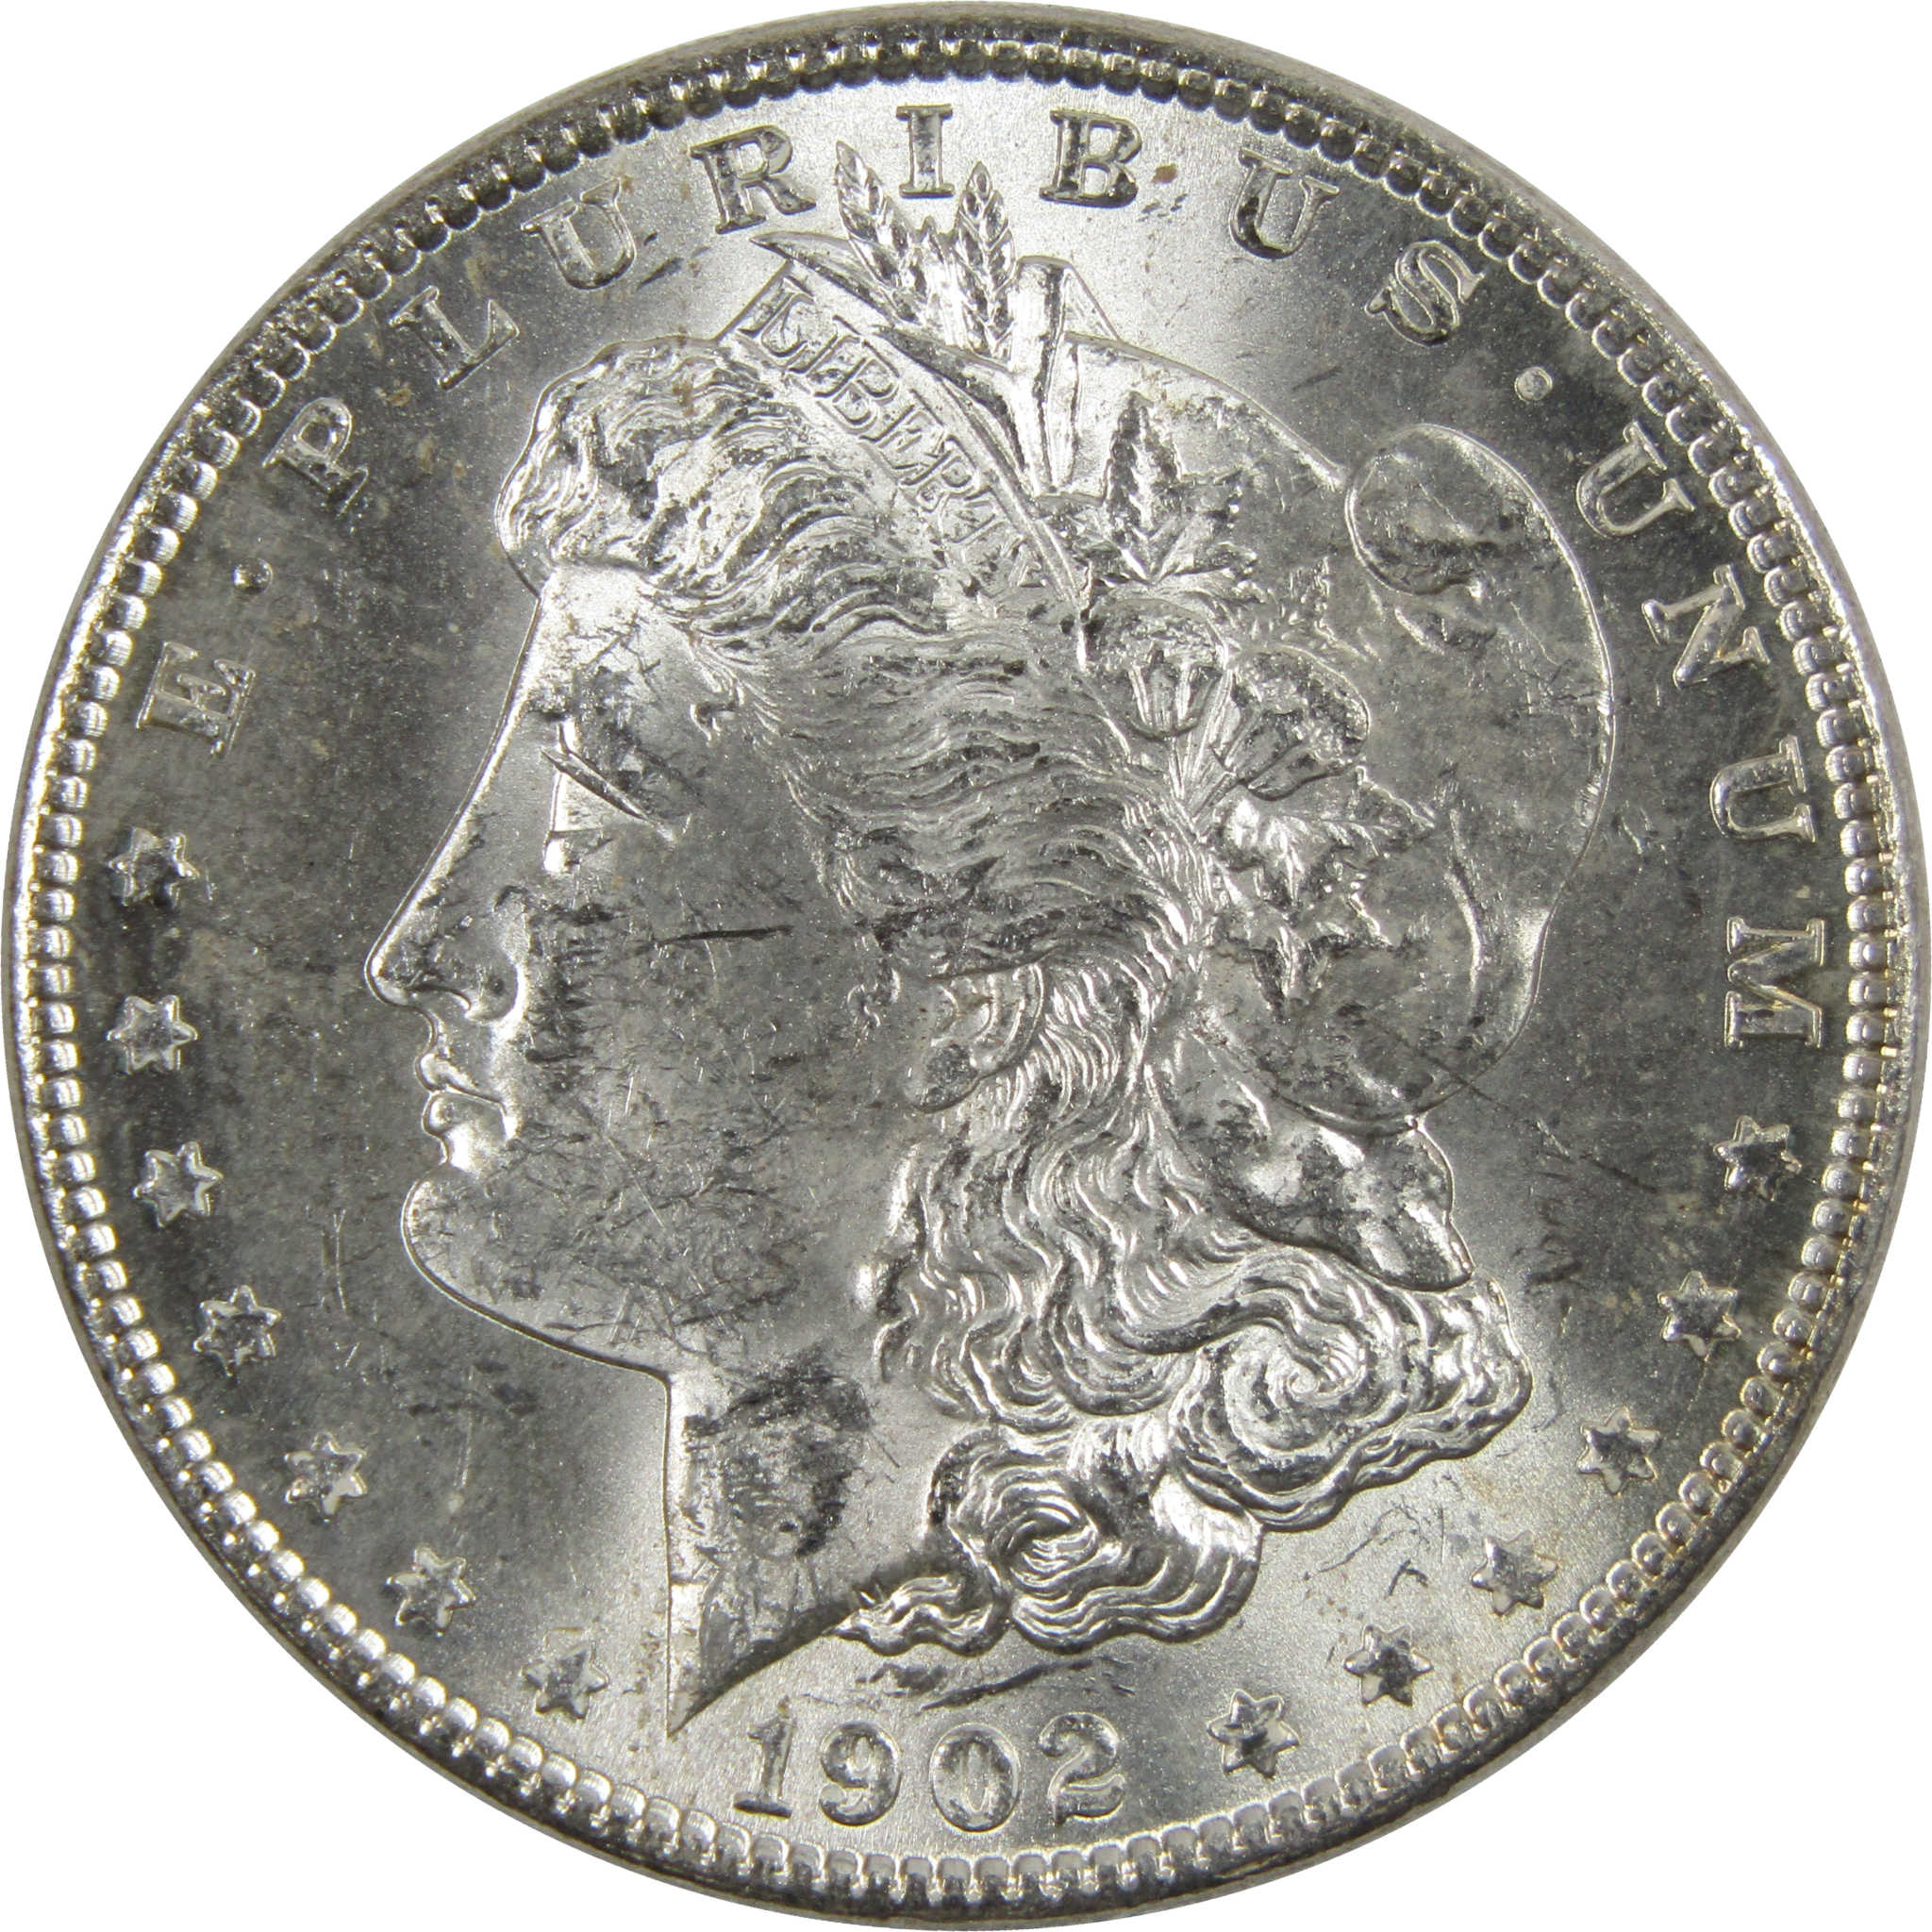 1902 O Morgan Dollar BU Uncirculated 90% Silver $1 Coin SKU:I6040 - Morgan coin - Morgan silver dollar - Morgan silver dollar for sale - Profile Coins &amp; Collectibles